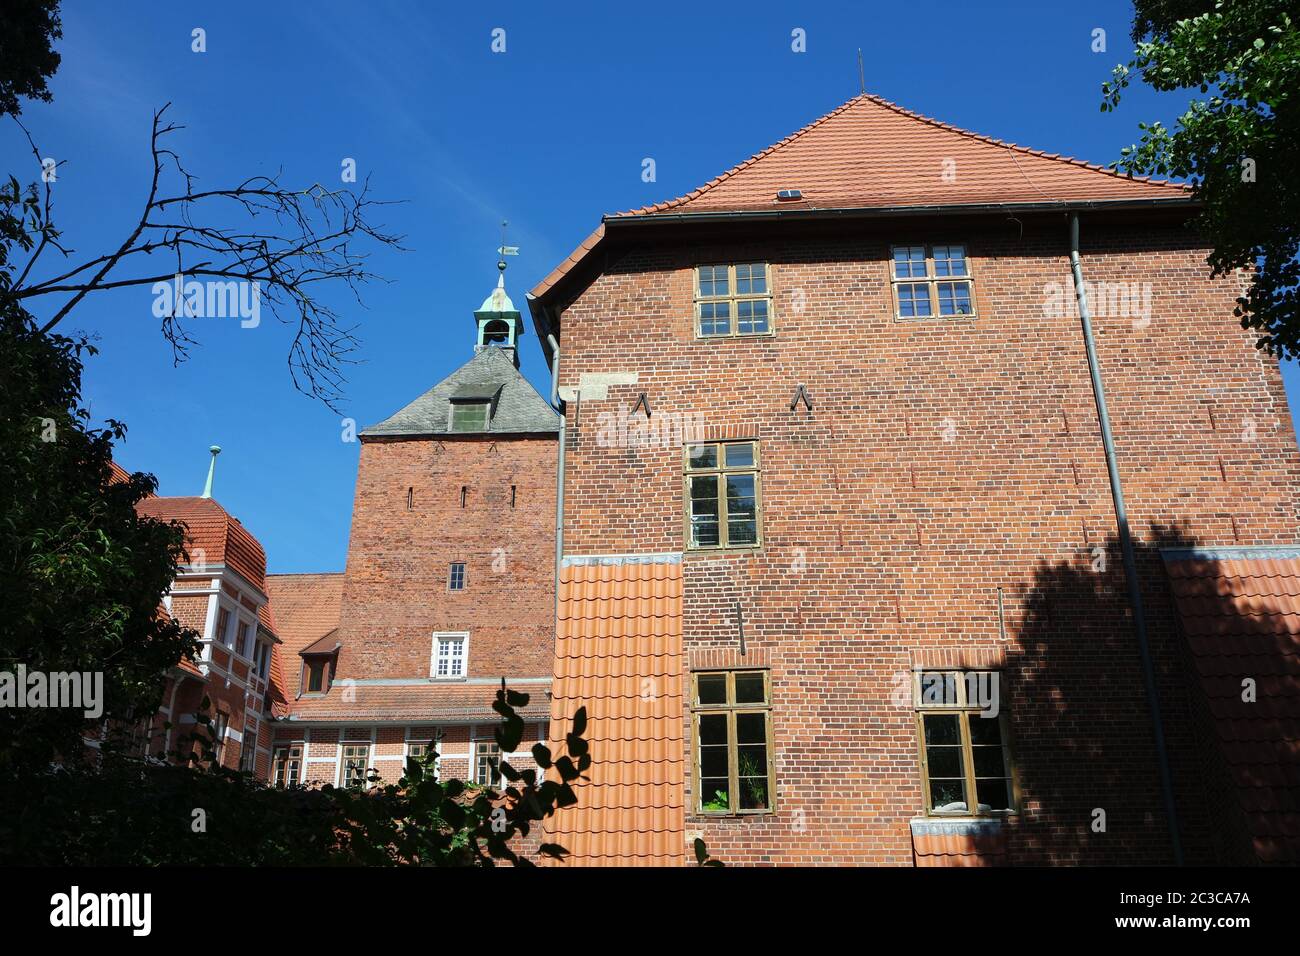 Castle in Winsen Luhe, Lower Saxony Stock Photo